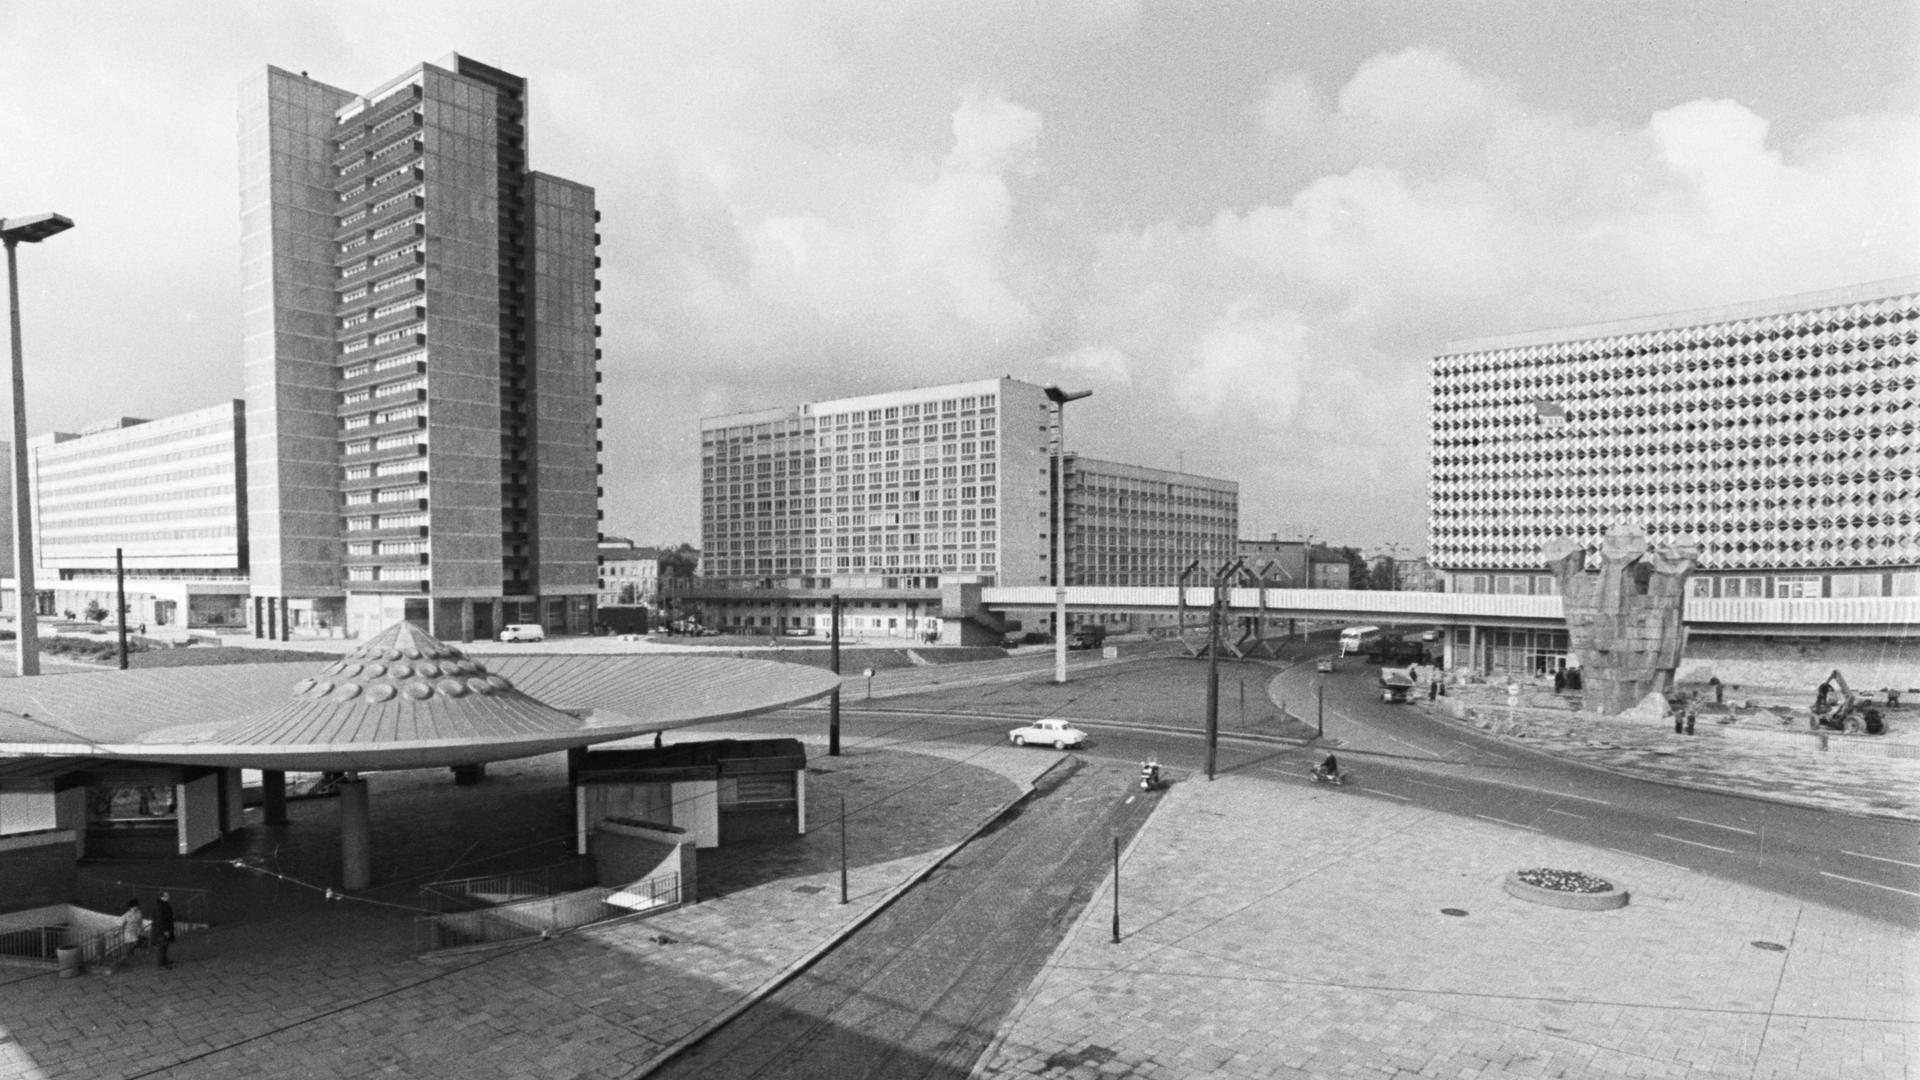 Schwarz-weiße Architekturaufnahme eines modernen Platzes, der von Hochhäusern umgeben ist